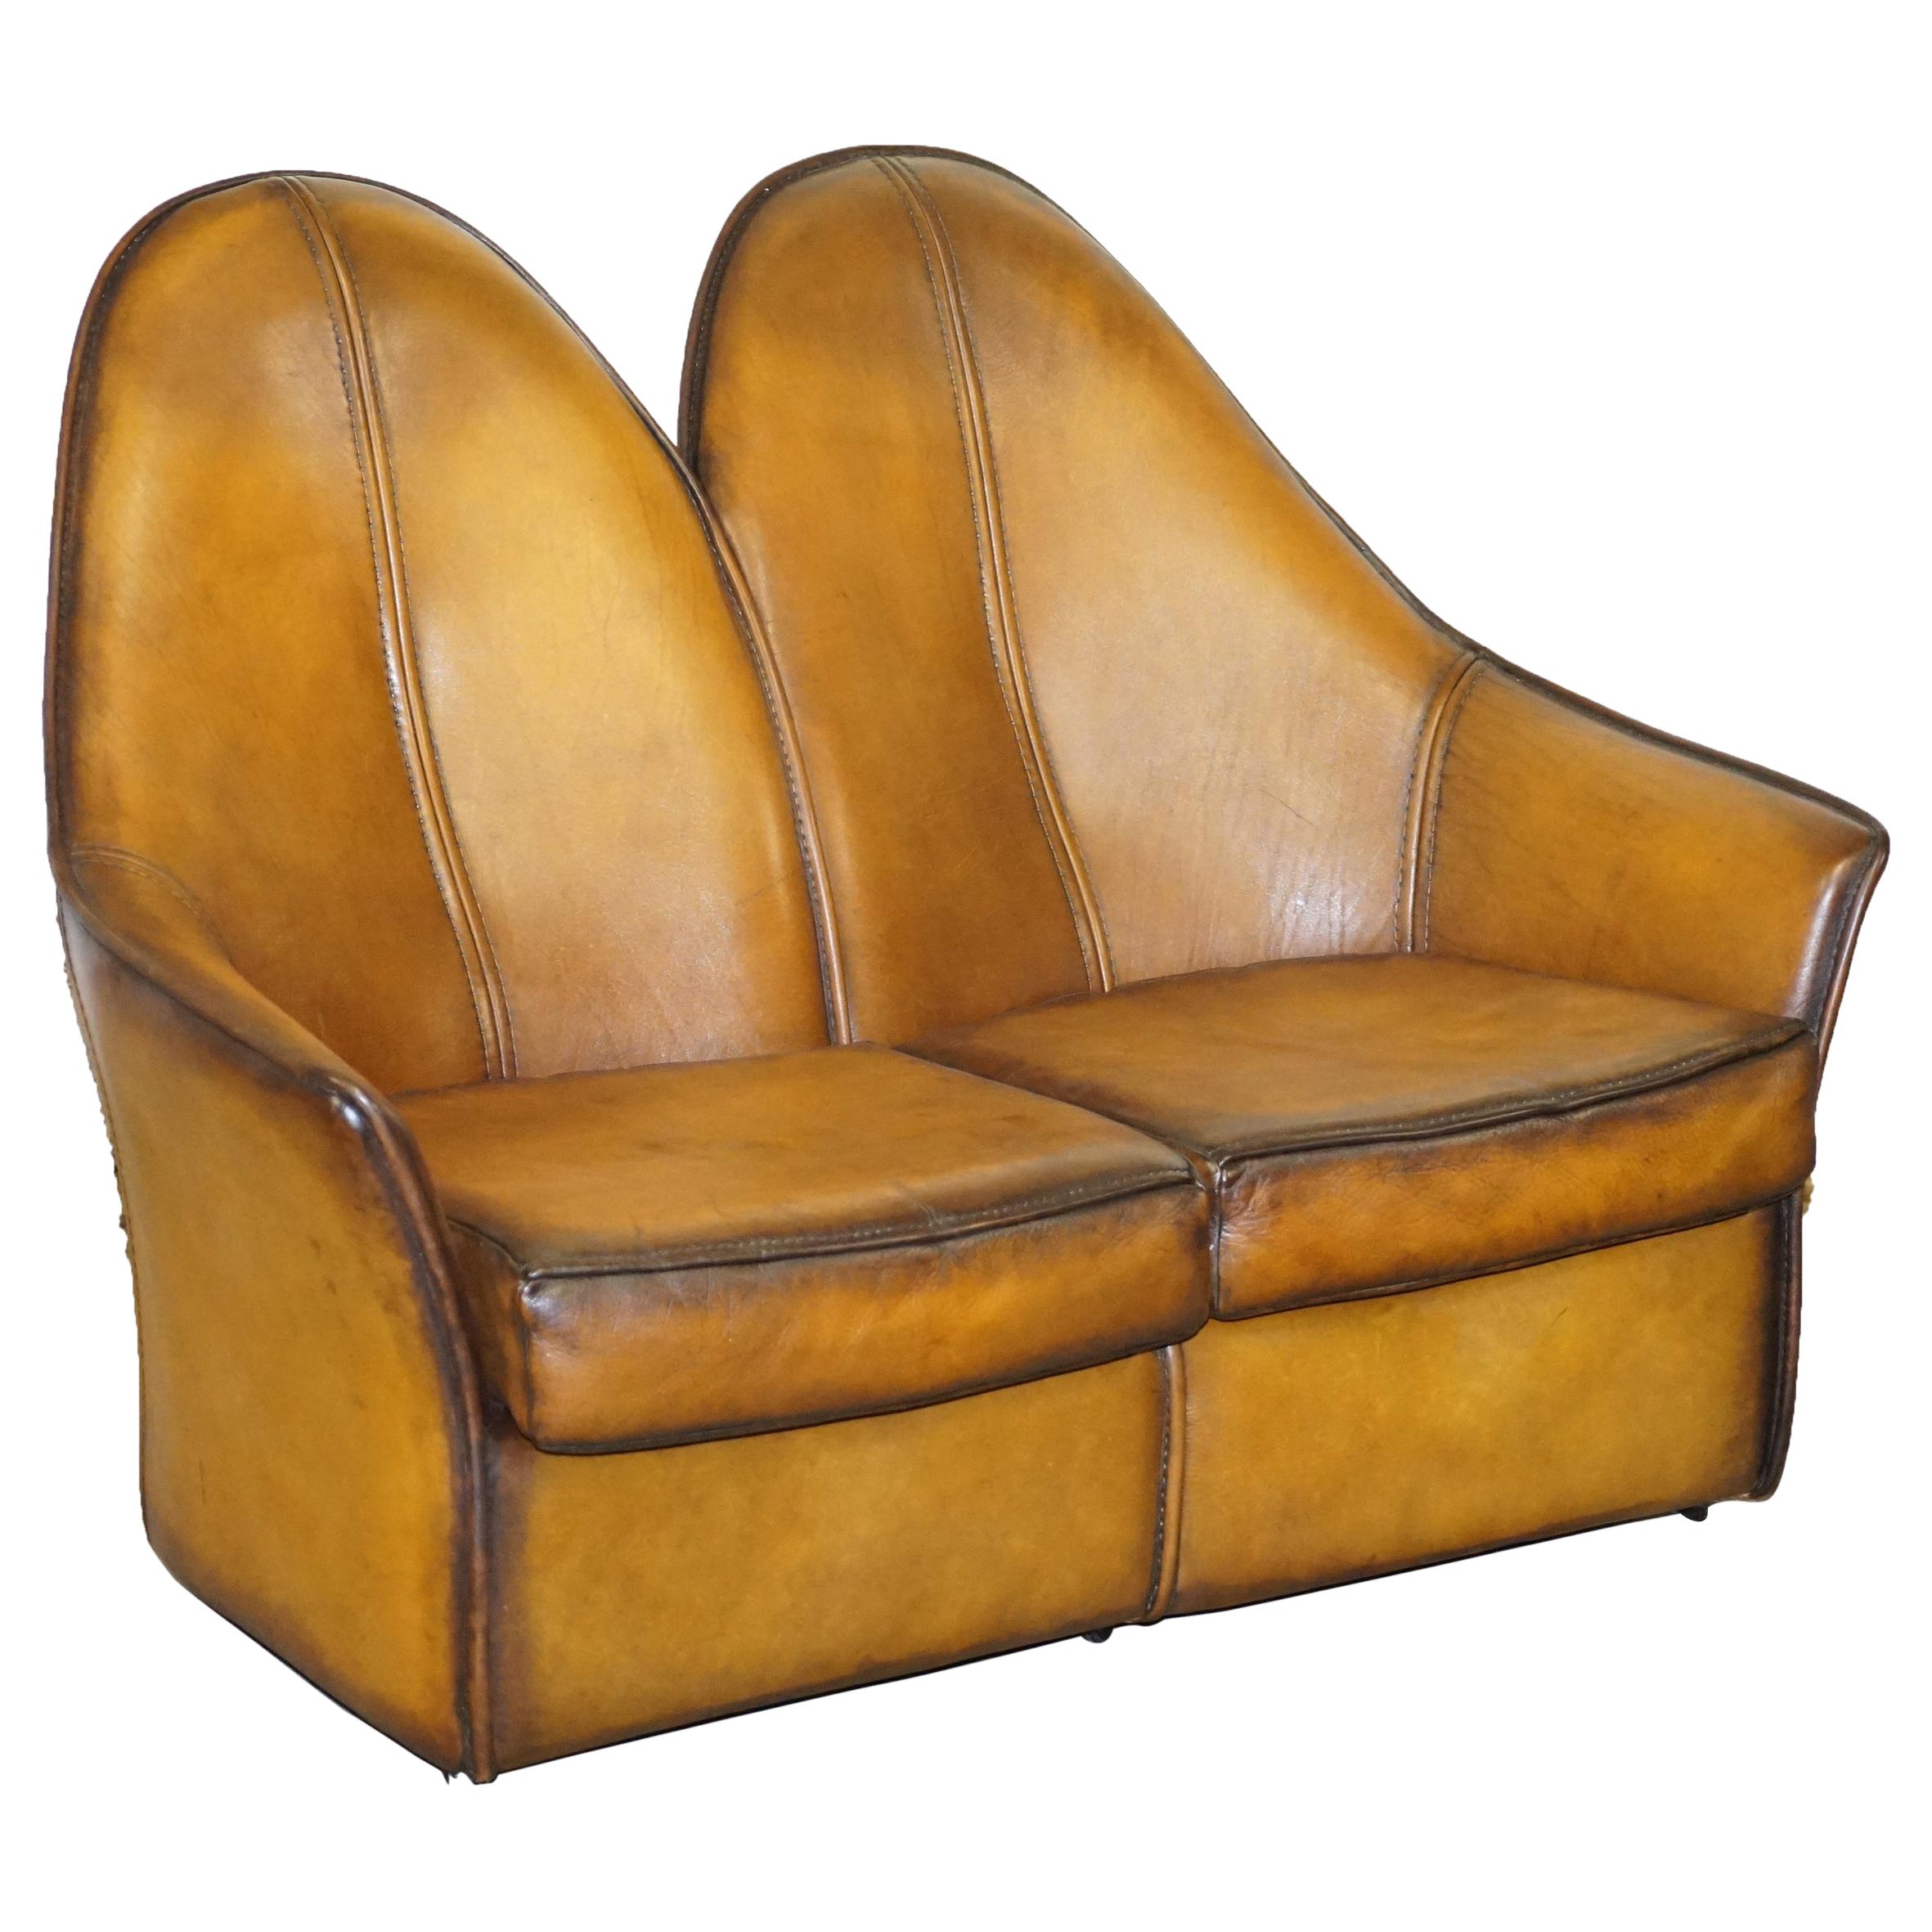 Sublime canapé en cuir marron à dossier incurvé Art Modern entièrement restauré, partie de la suite